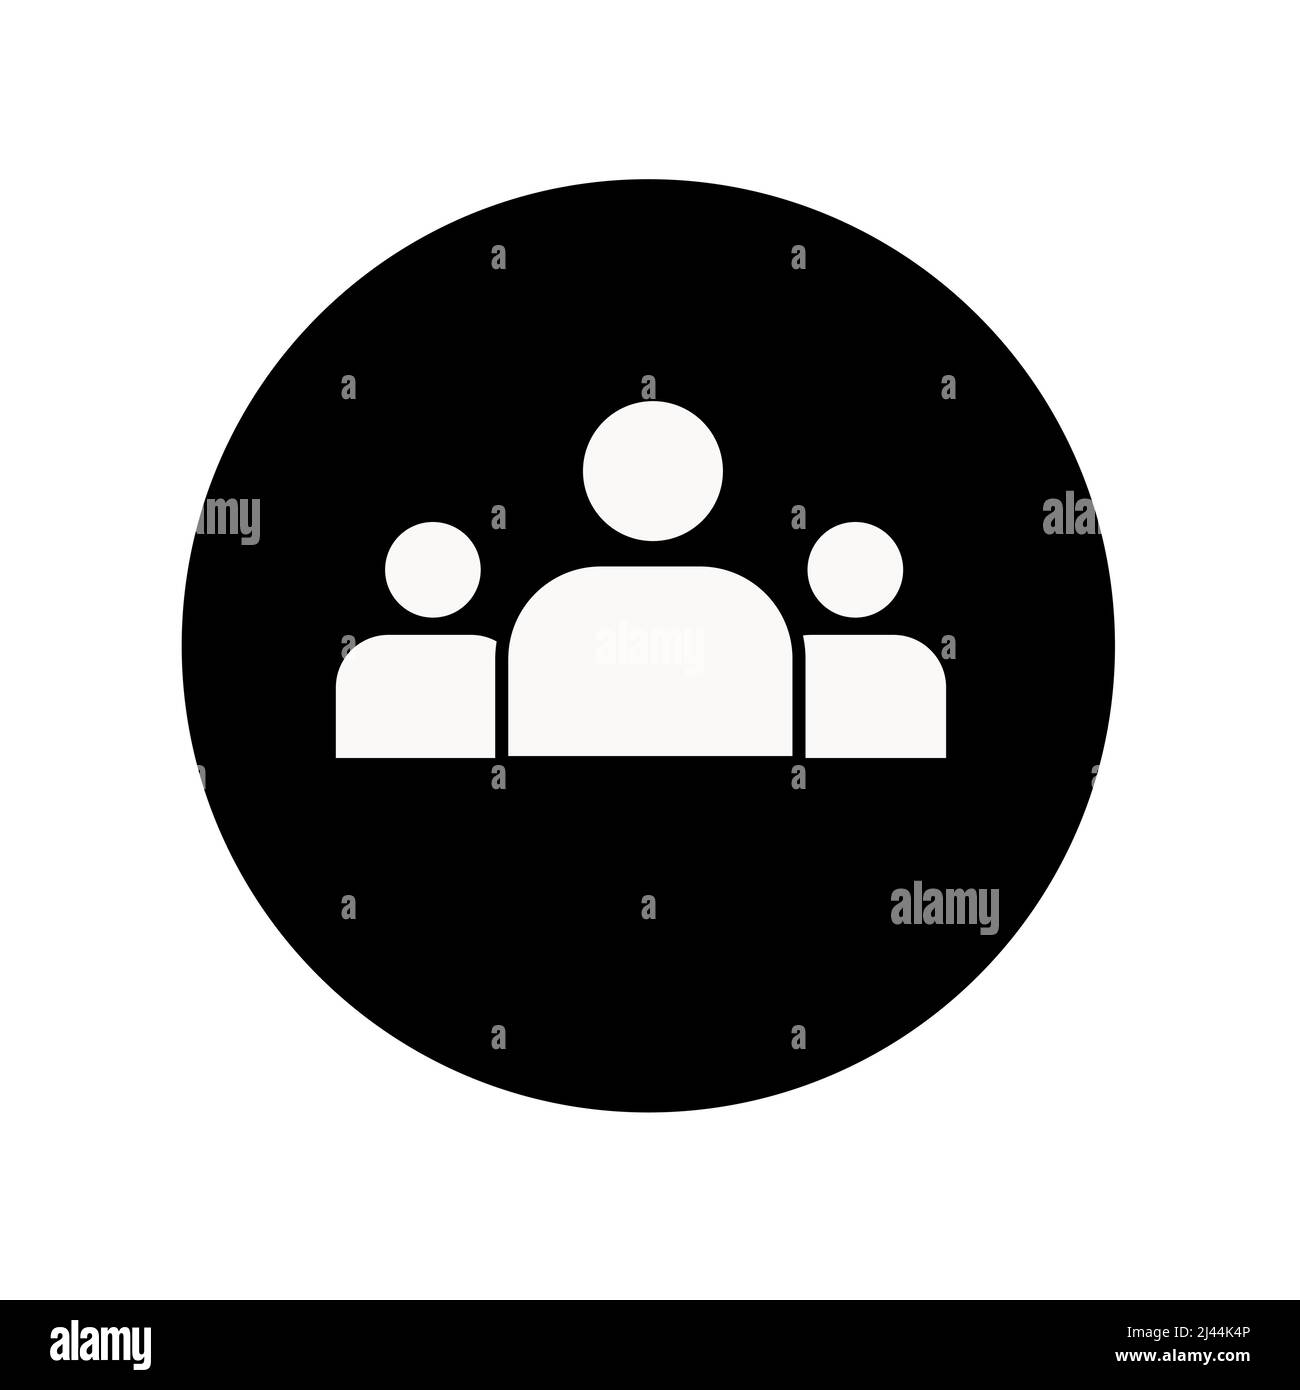 icona glyph di 3 persone. Stile semplice e solido. Multiutente, cerchio, gruppo, persona, concetto di servizio. Simbolo di folla. Illustrazione Vettoriale